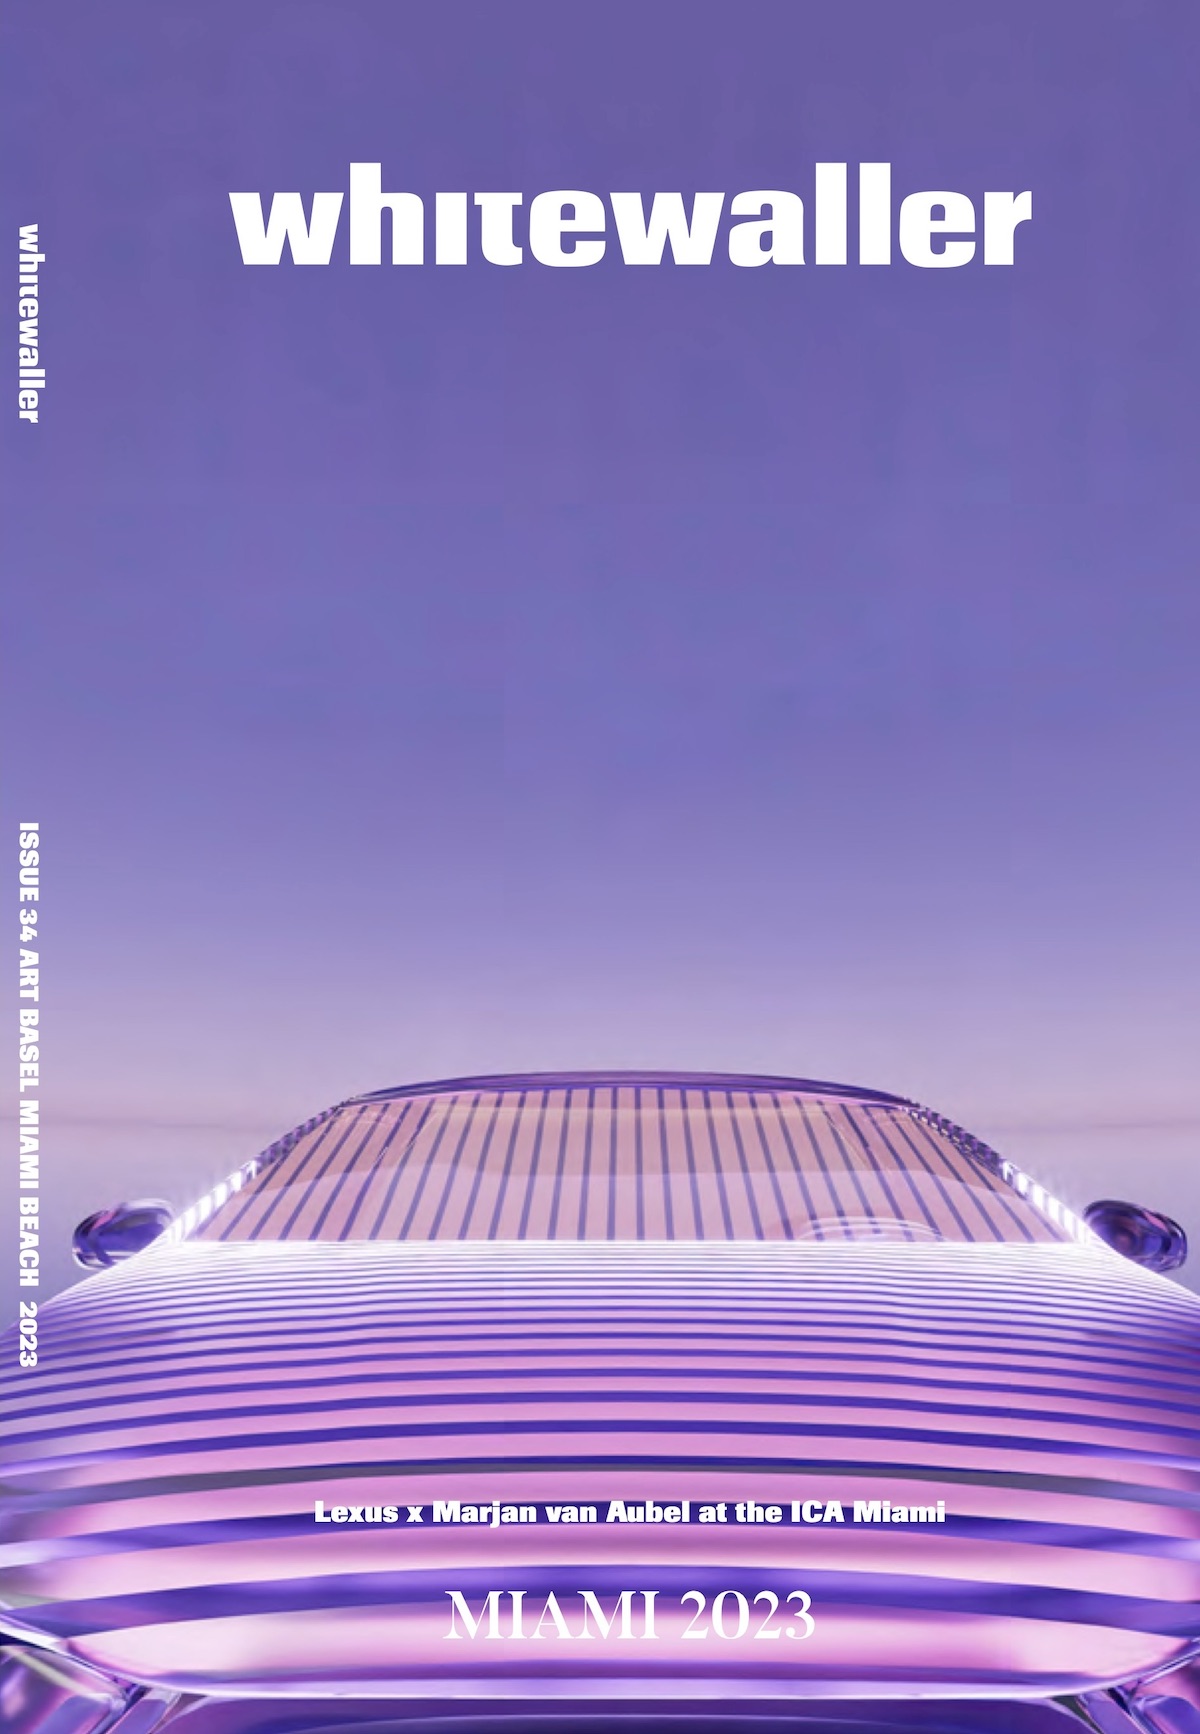 Whitewaller Miami Lexus cover for Miami Art Week